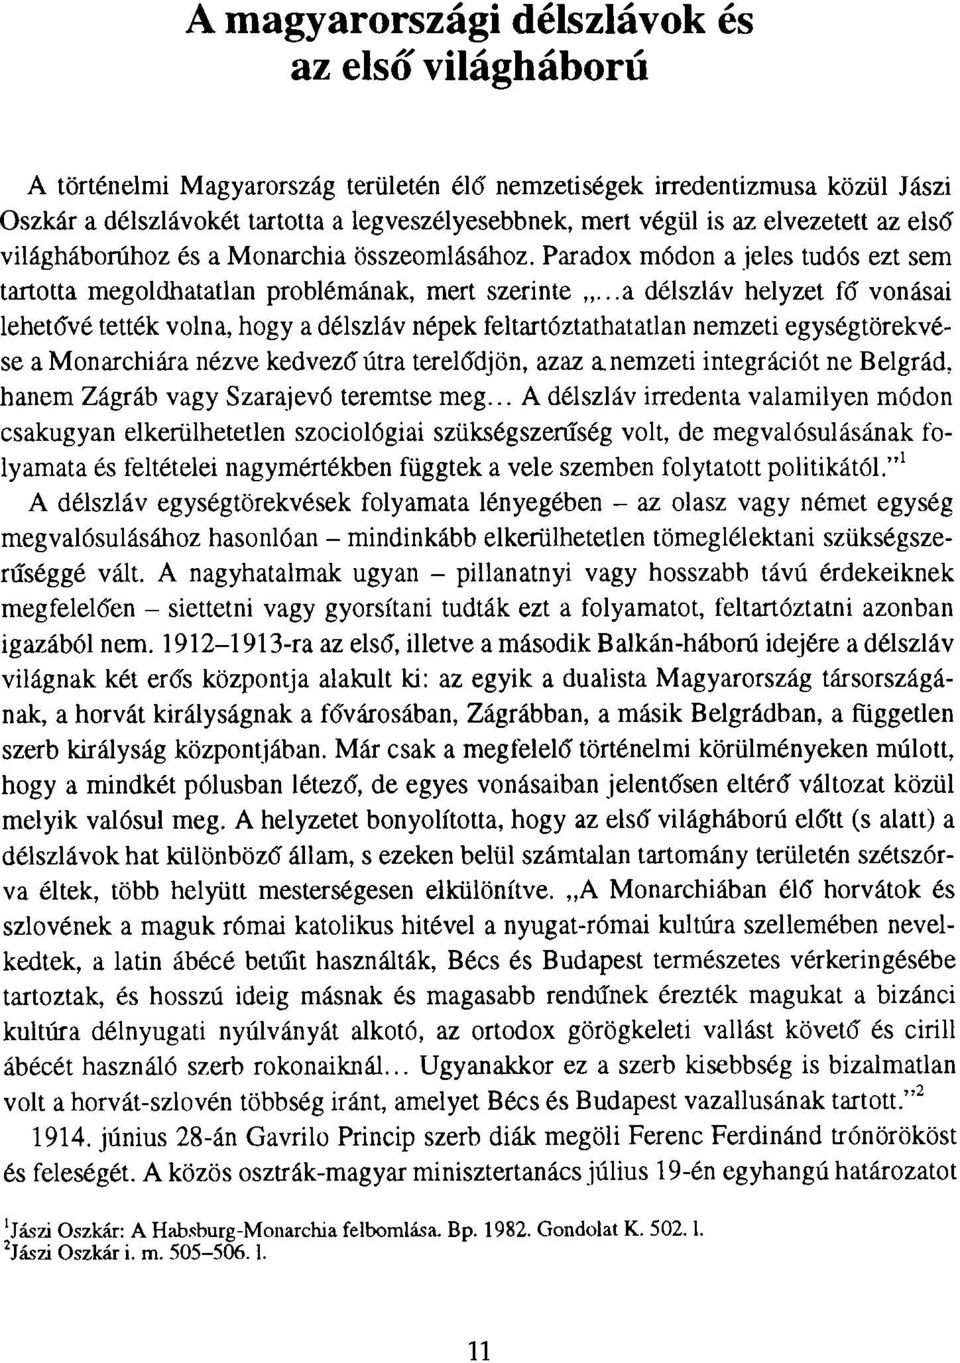 ..a délszláv helyzet fő vonásai lehetővé tették volna, hogy a délszláv népek feltartóztathatatlan nemzeti egységtörekvése a Monarchiára nézve kedvező útra terelődjön, azaz a nemzeti integrációt ne